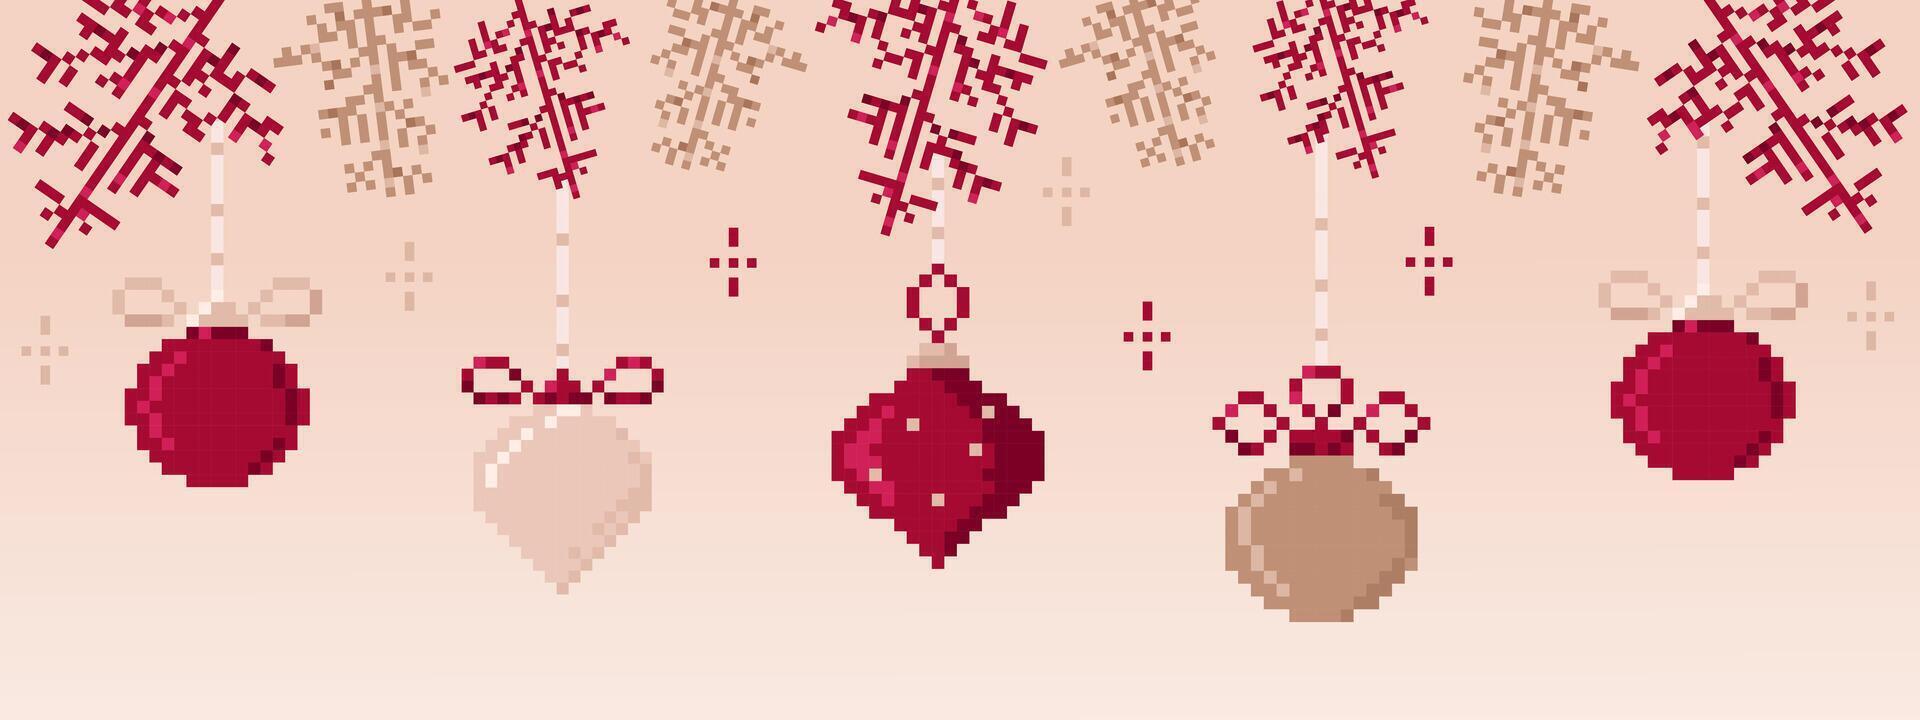 pixel konst jul och ny år baner med jul träd grenar och skön bollar.pixlade vinter- dekorationer. ny år skriva ut. vektor